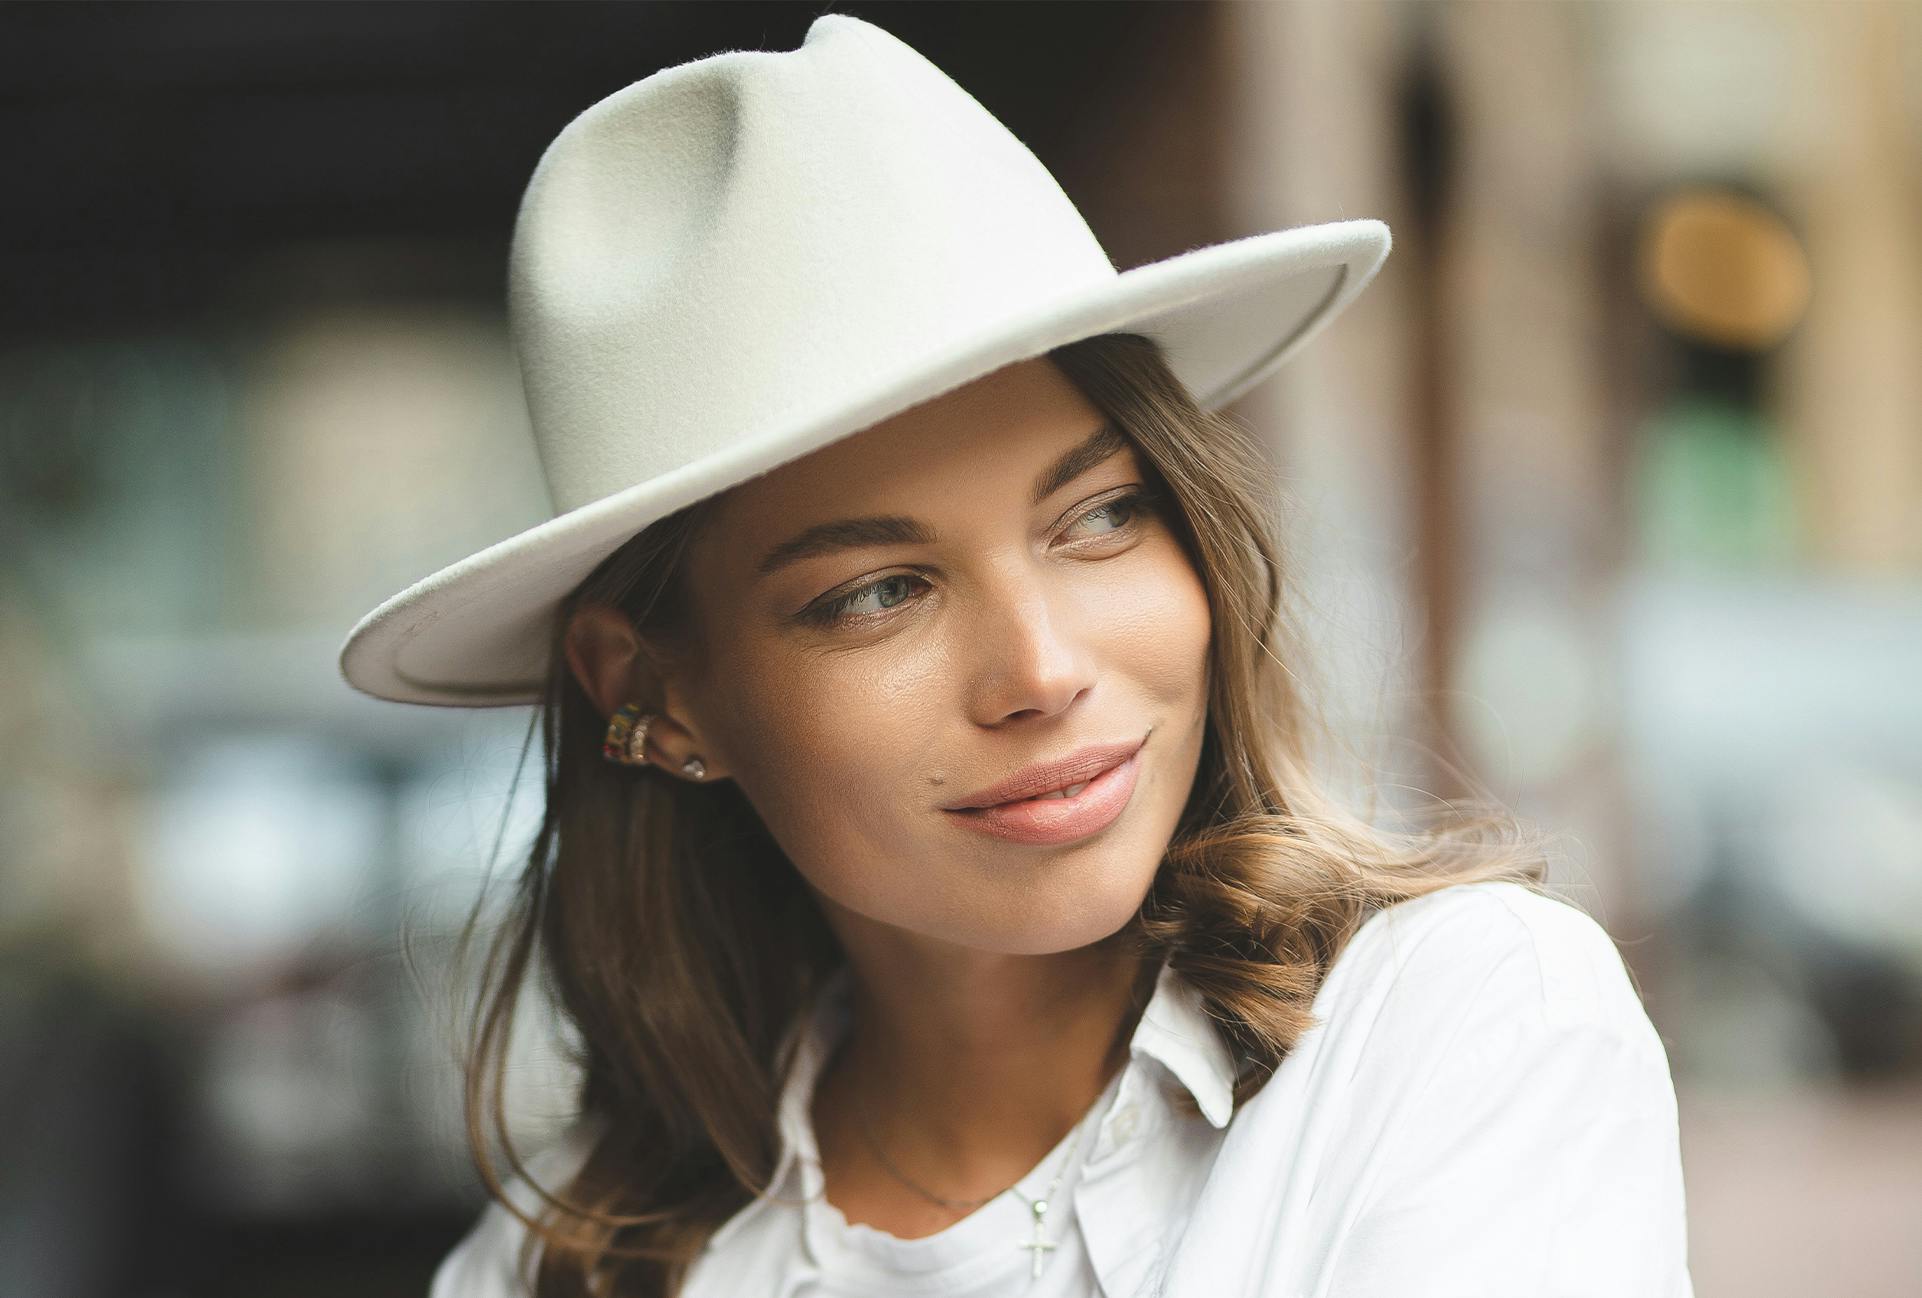 Woman wearing a white hat